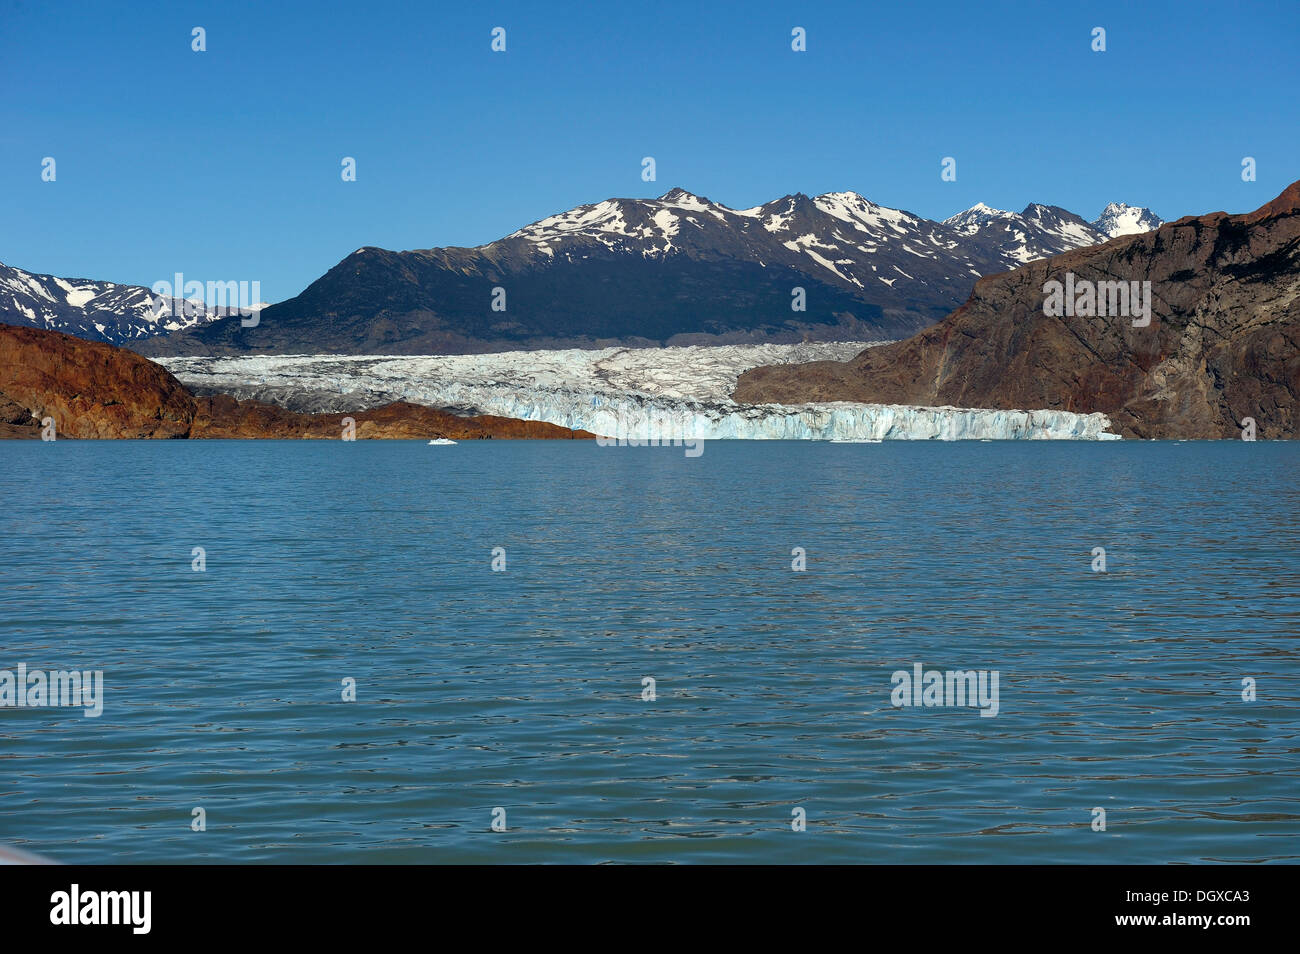 Viedma Glacier with Lago Viedma glacier lake, El Chalten, Patagonia, Argentina, South America Stock Photo